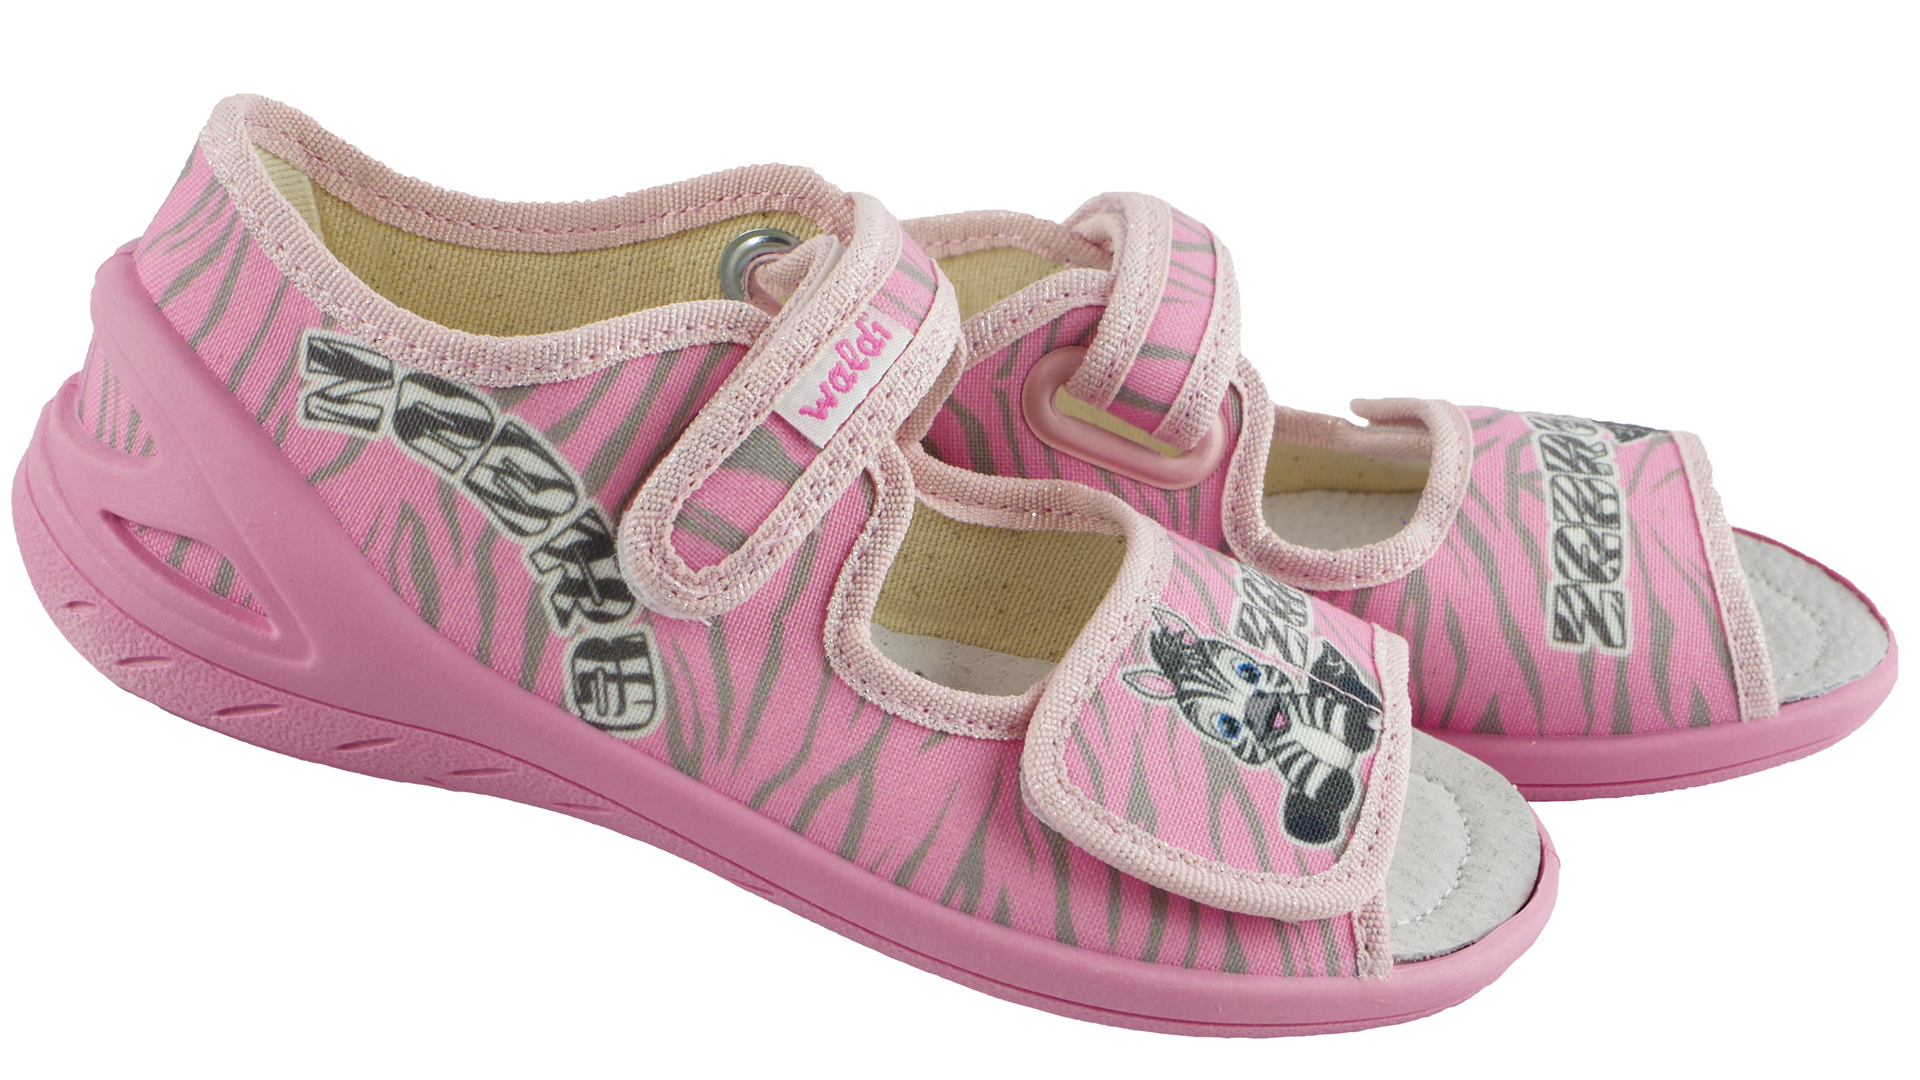 Текстильная обувь для девочек Тапочки детские (1820) цвет Розовый 23-30 размеры – Sole Kids. Фото 3